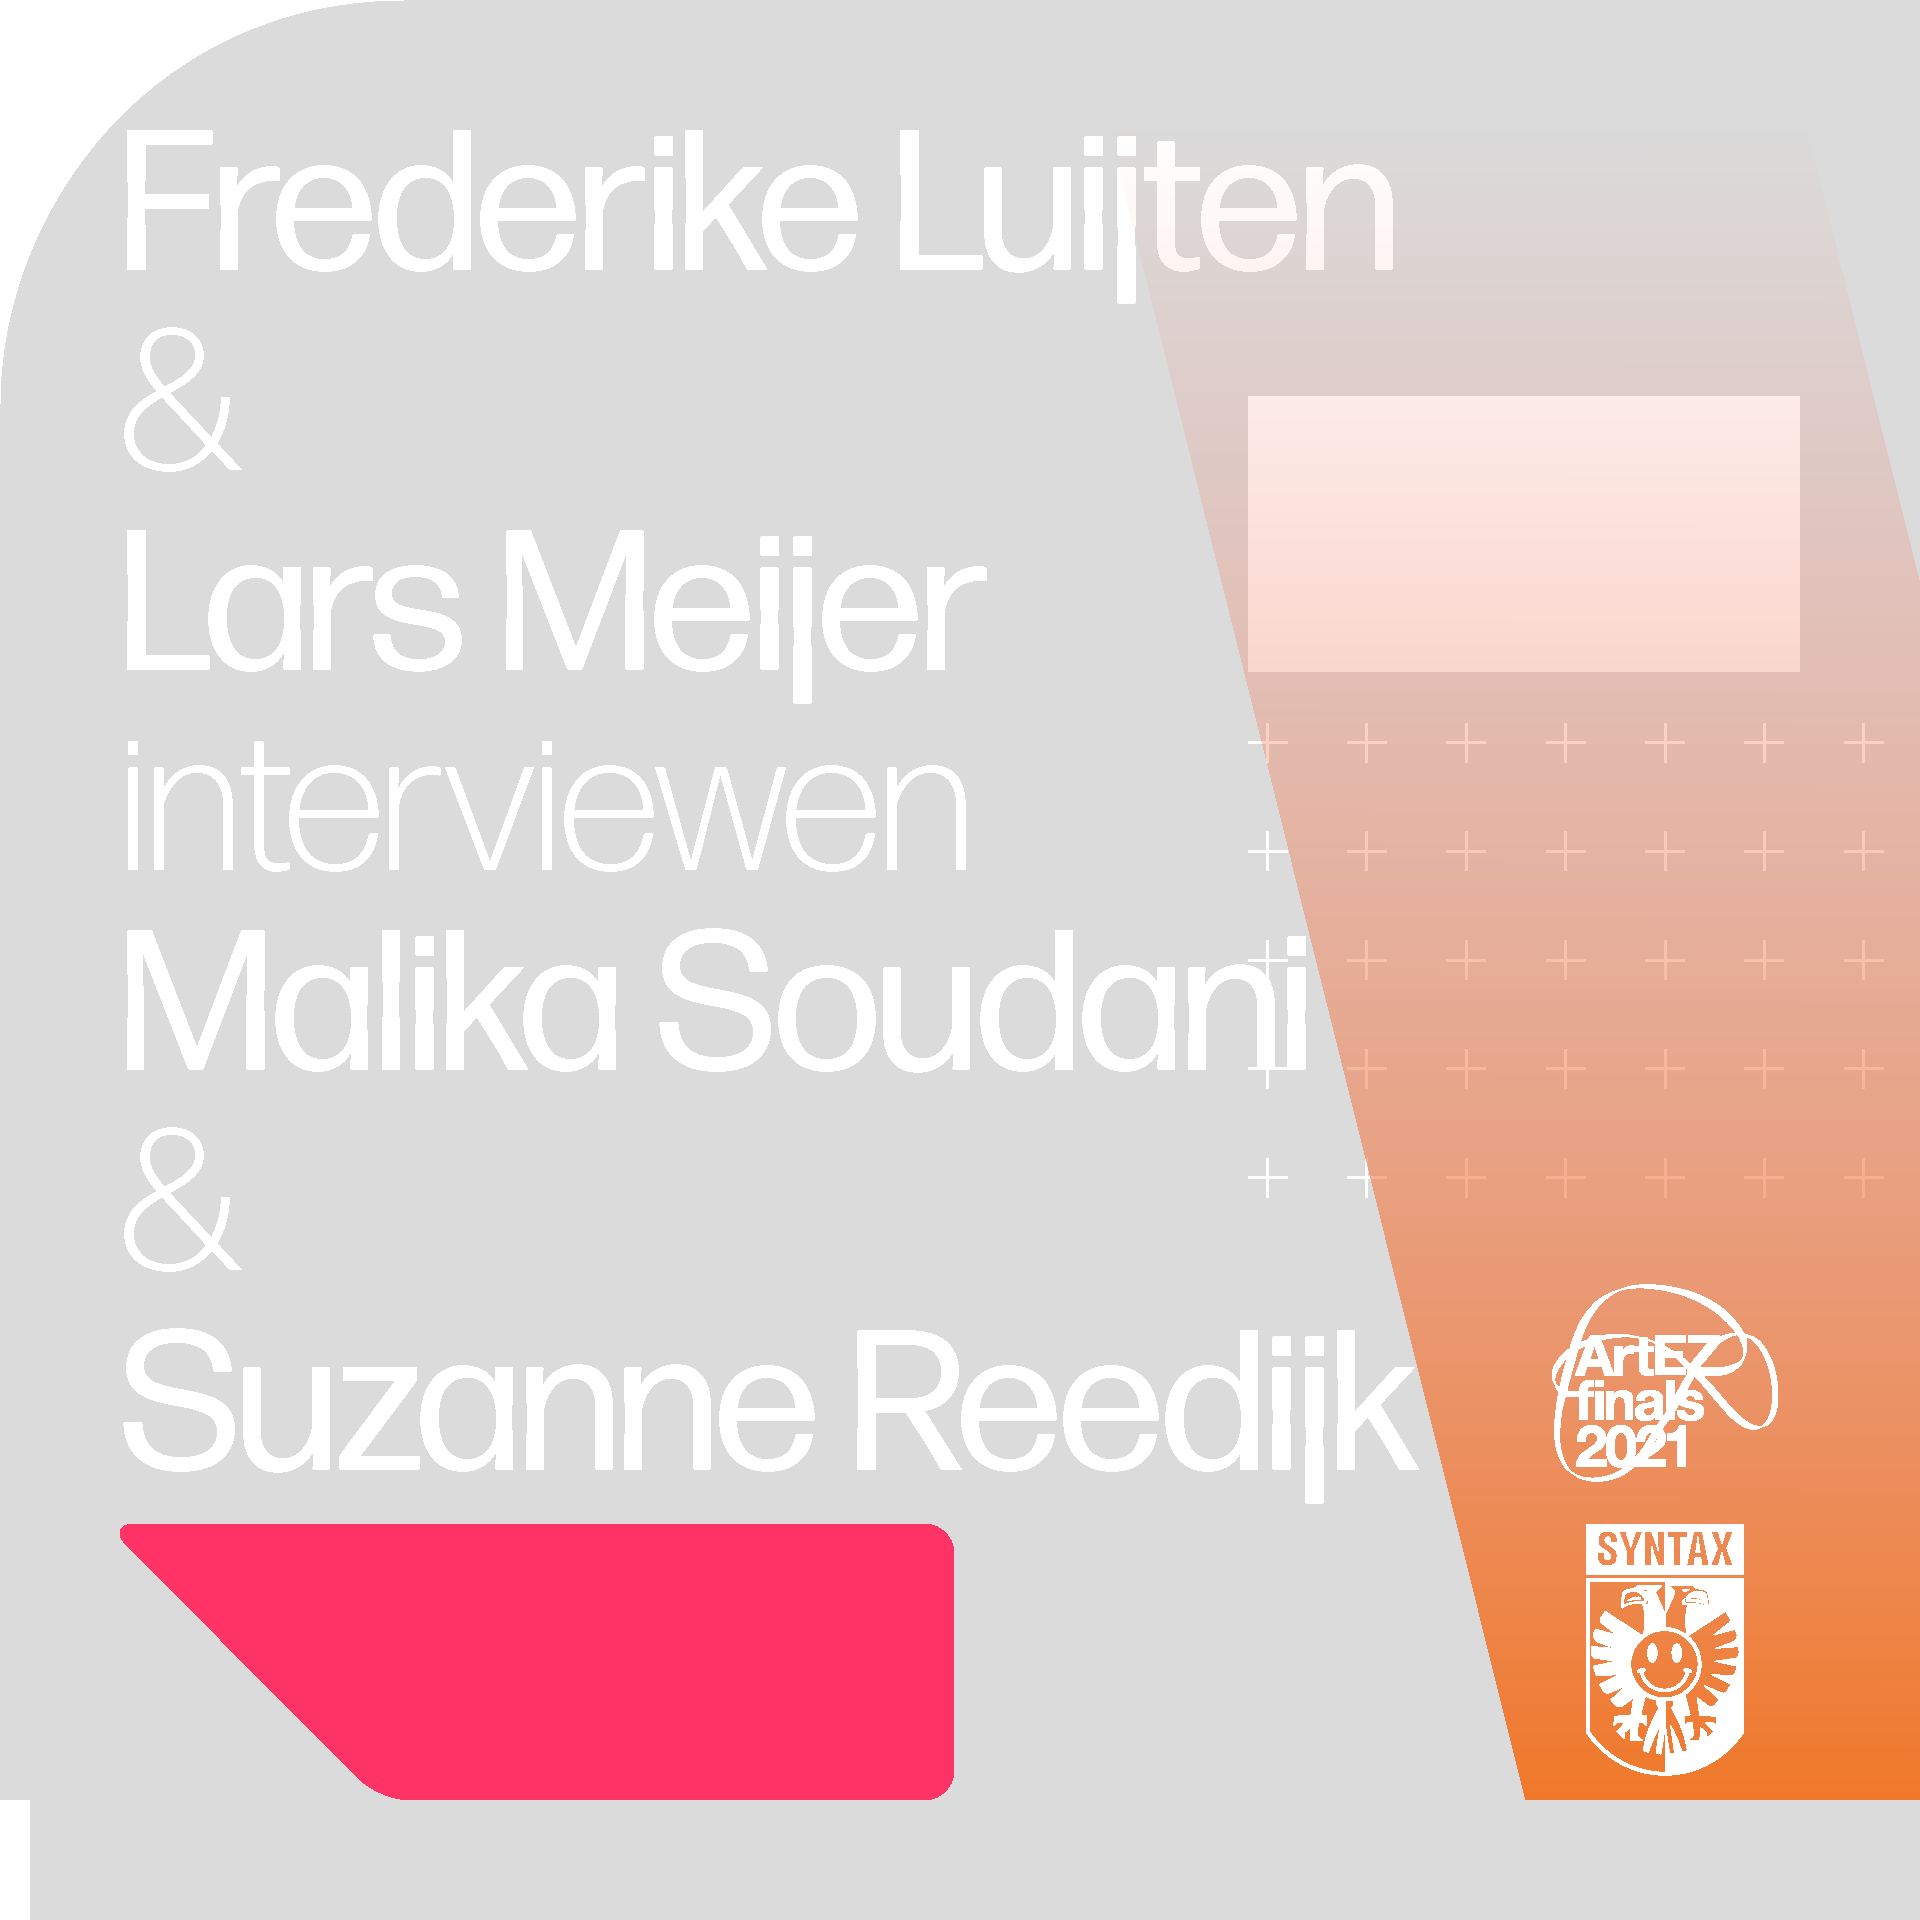 Frederike Luijten & Lars Meijer interviewen Malika Soudani & Suzanne Reedijk